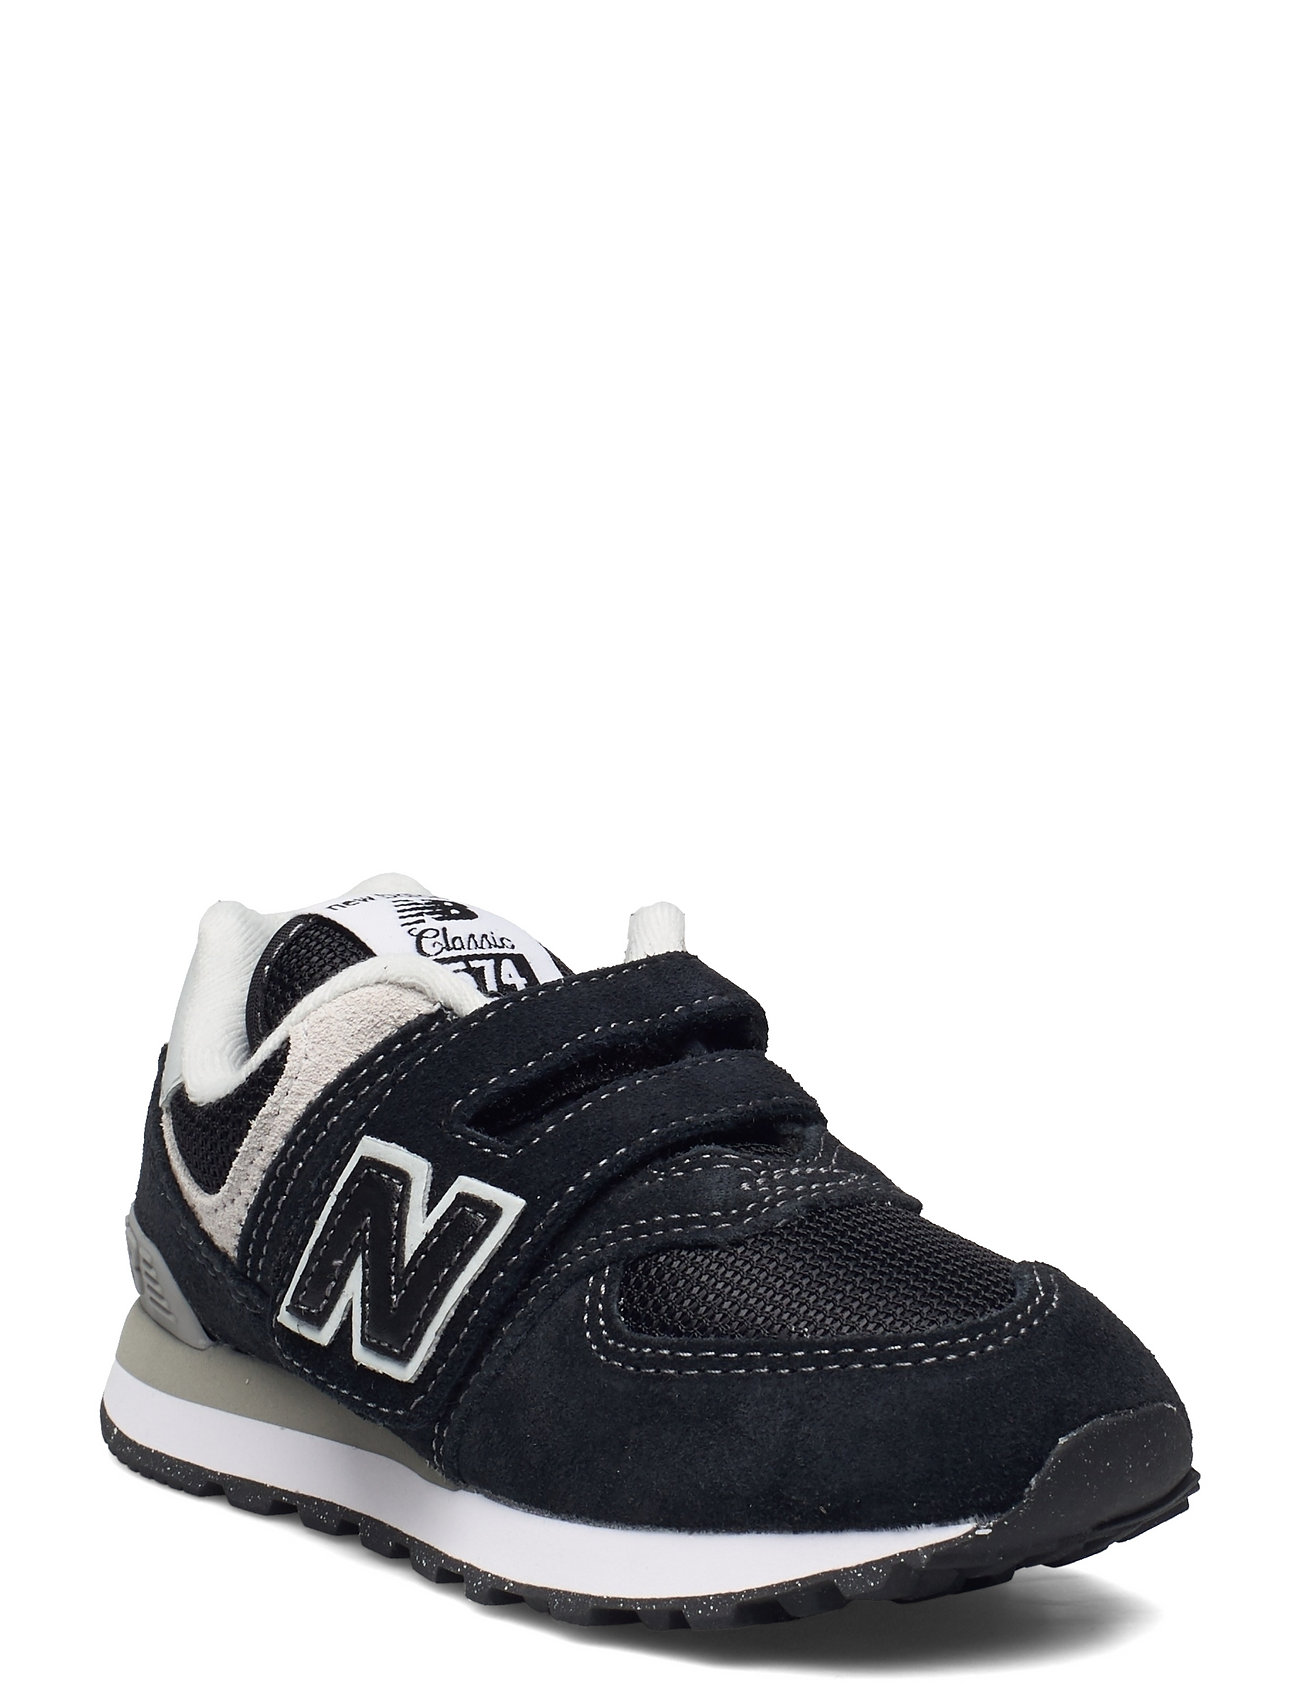 New Balance 574 Kids Hook & Loop Sport Sneakers Low-top Sneakers Black New Balance